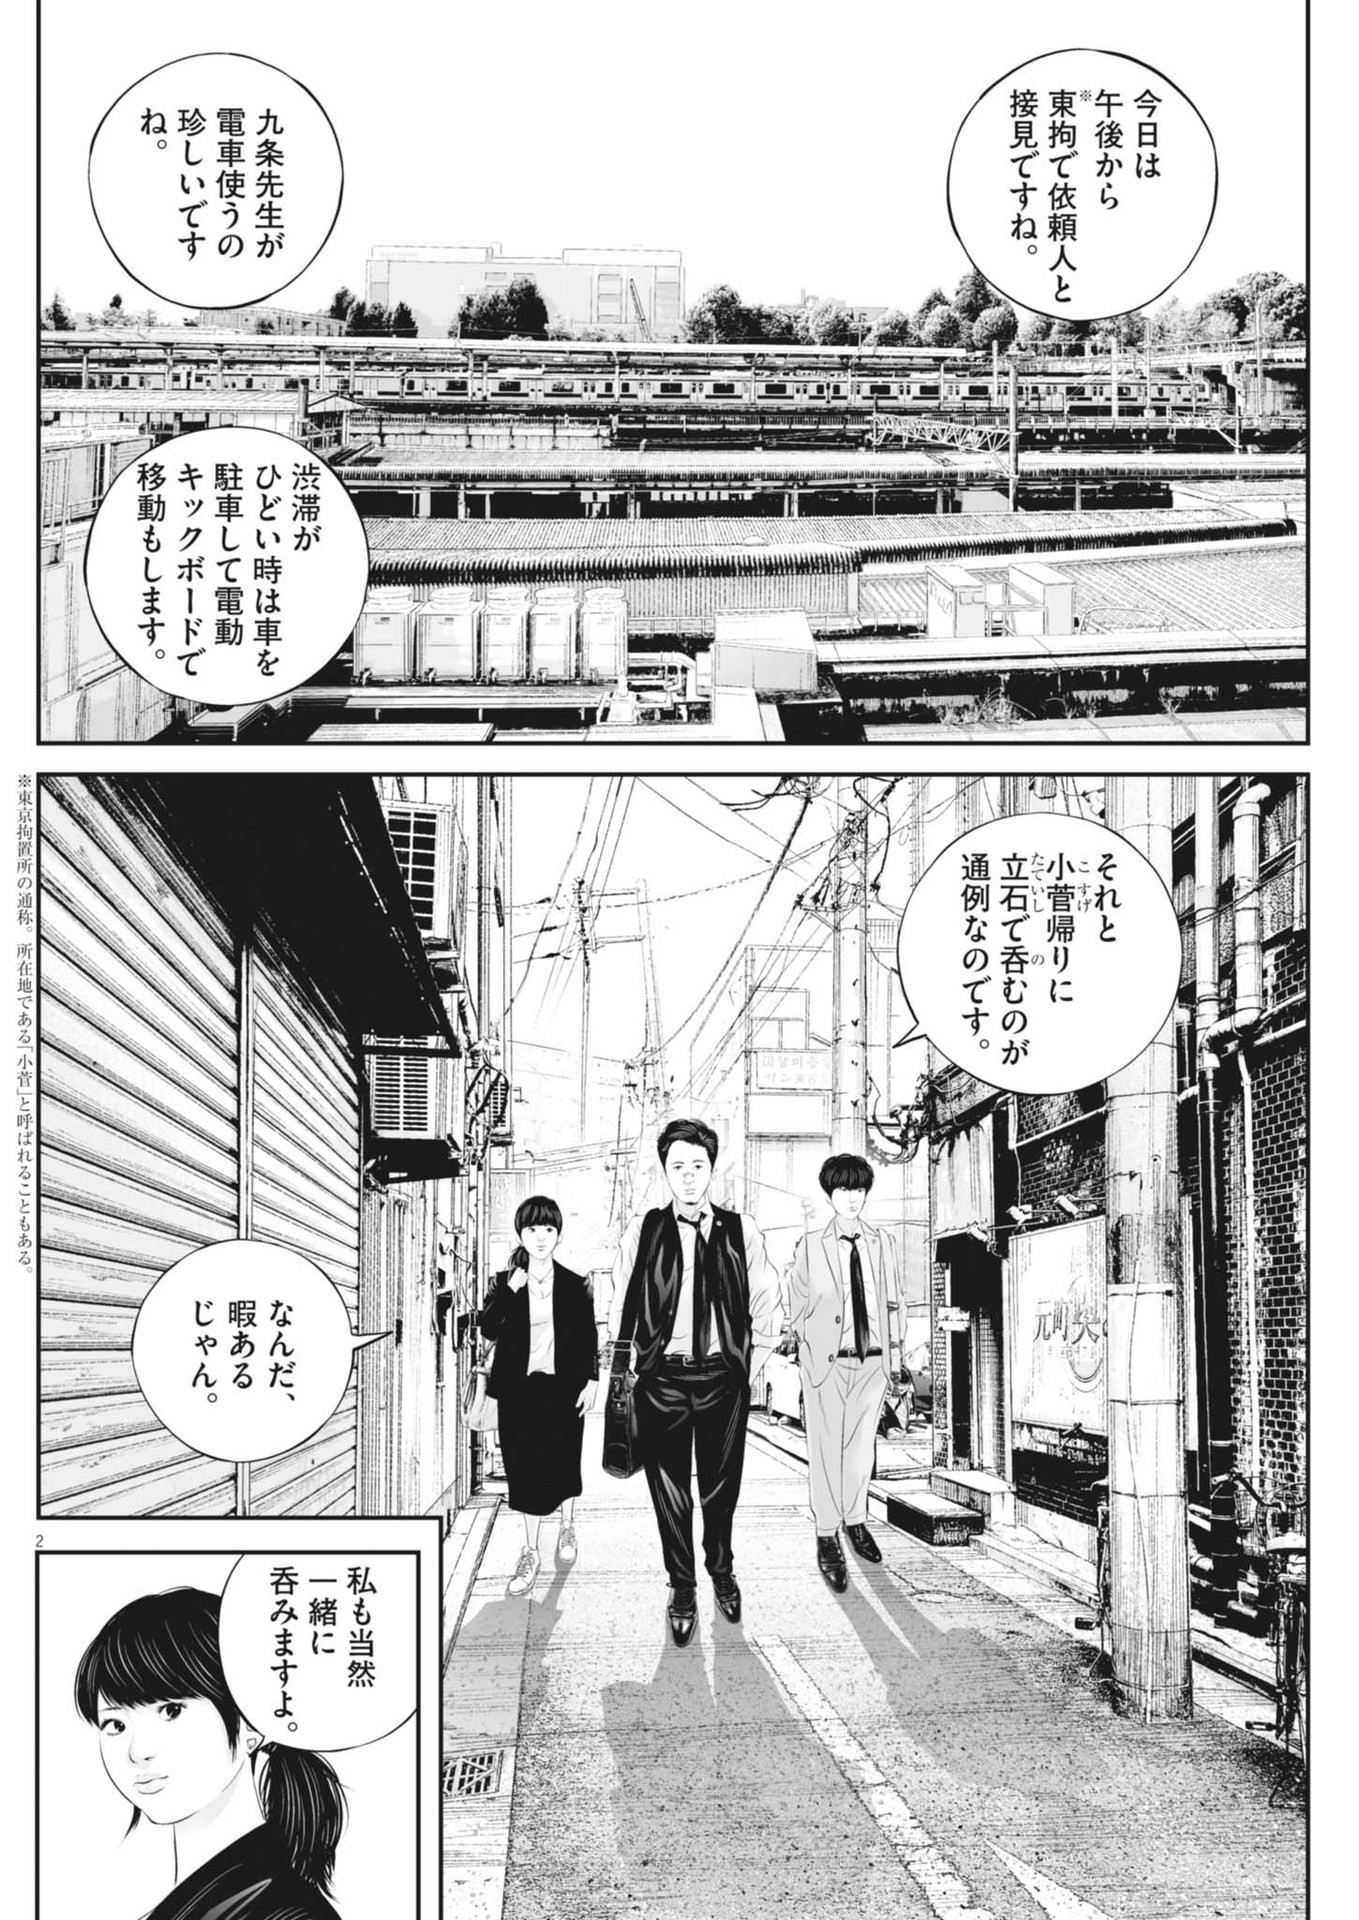 Kujou no Taizai - Chapter 104 - Page 2